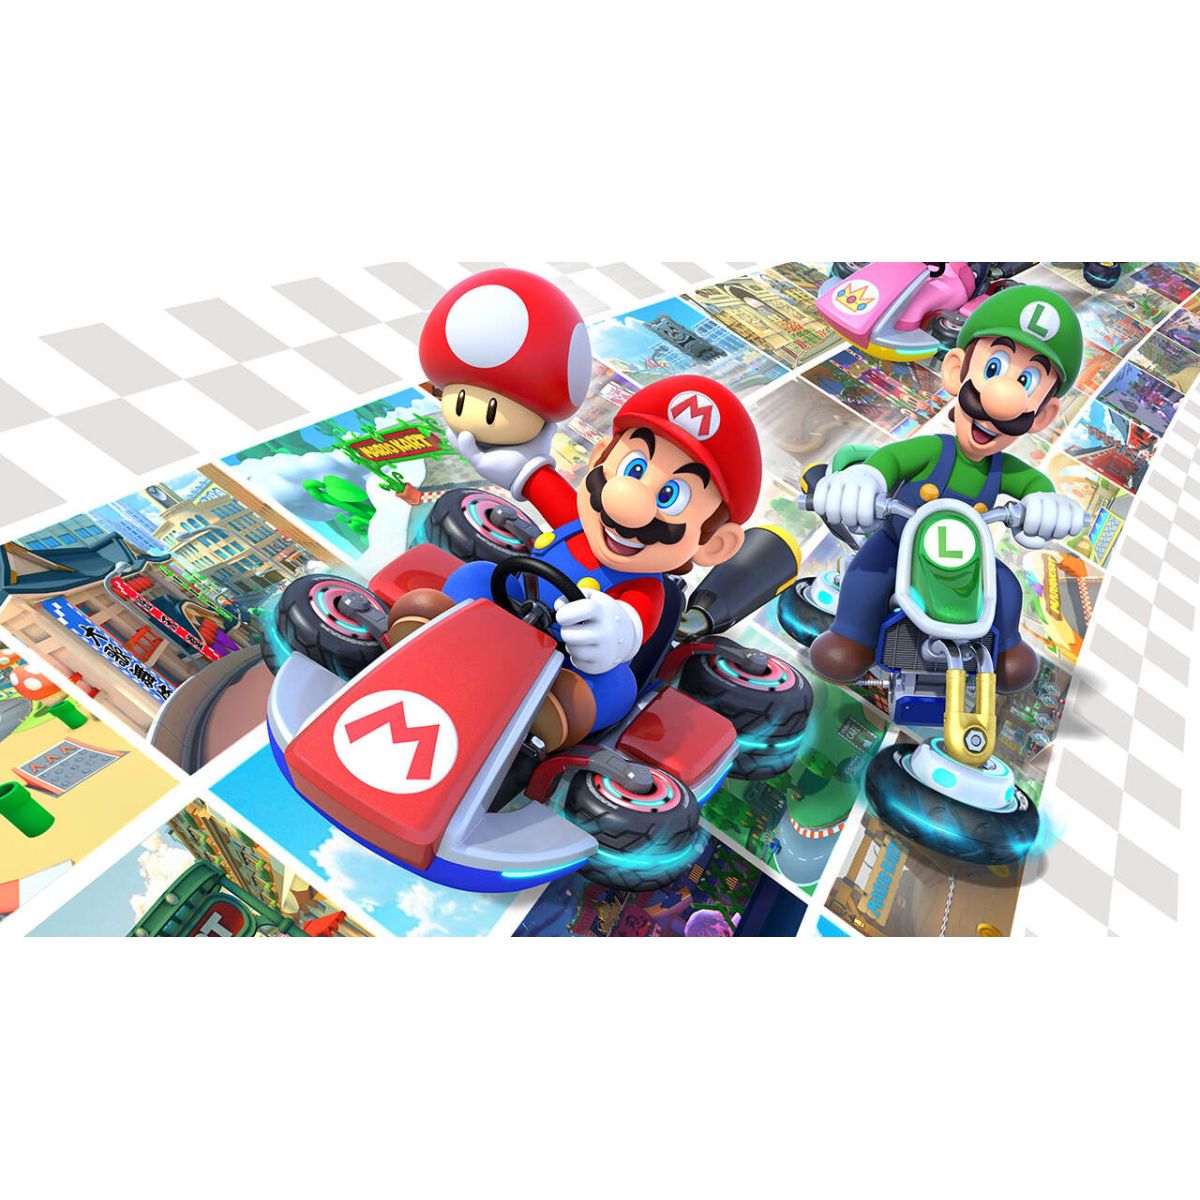 Le jeu Mario Kart 8 Deluxe pour la Nintendo Switch est proposé avec un  super prix sur ce site